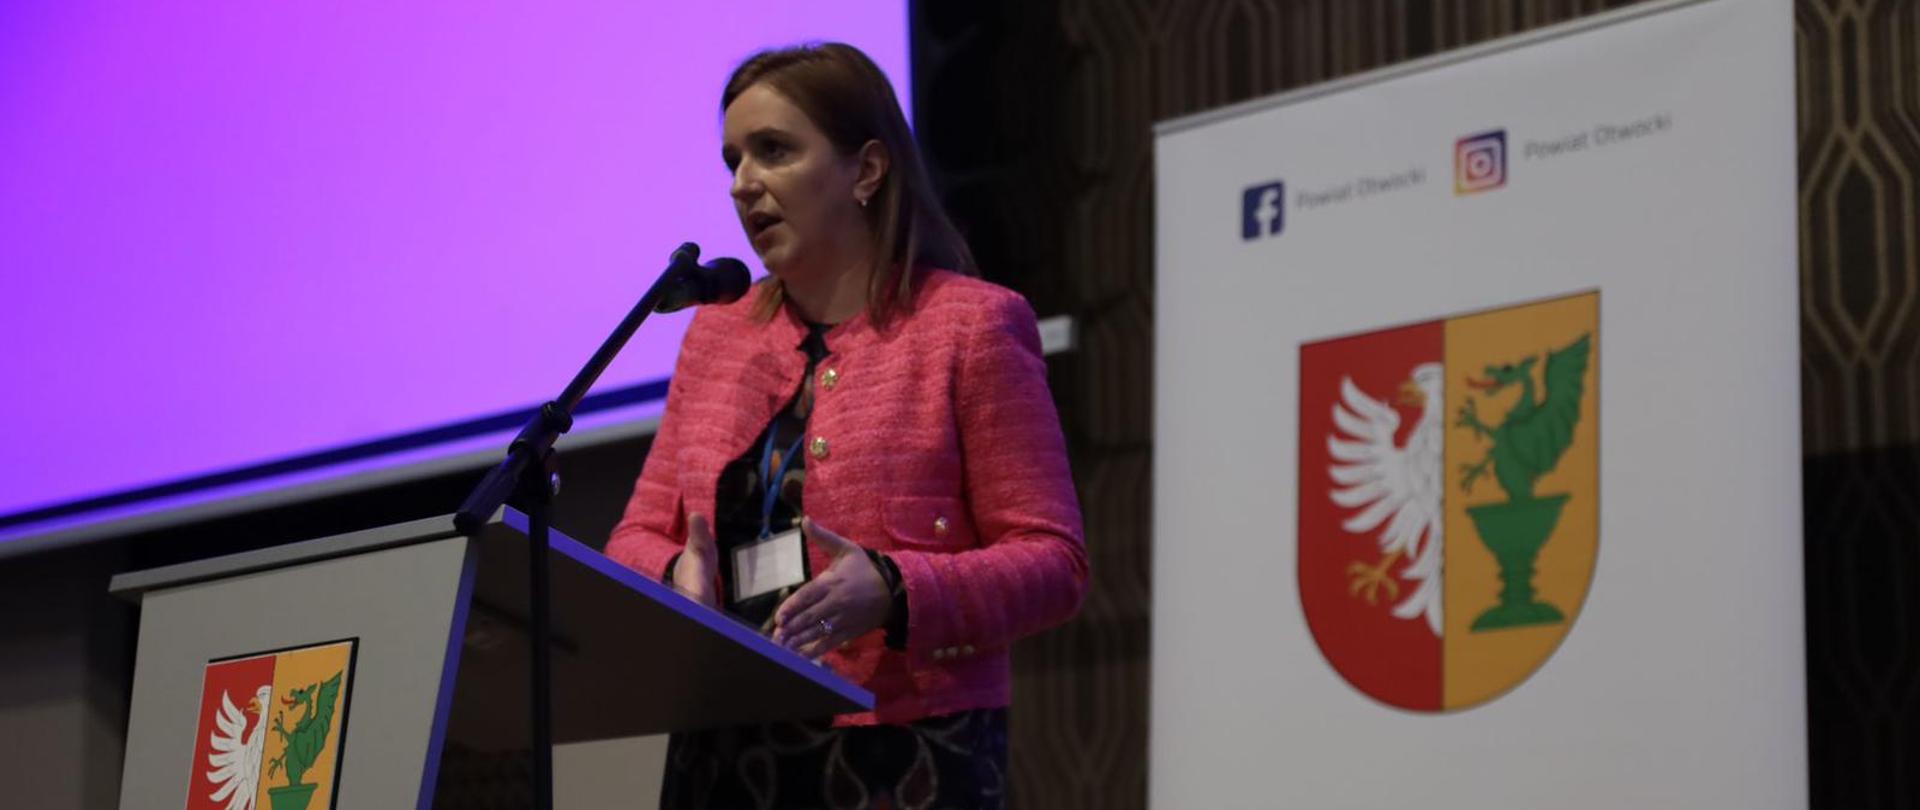 Wiceminister Olga Semeniuk wygłasza przemówienie na temat Polskiego Ładu podczas Forum Gospodarczego Powiatu Otwockiego.